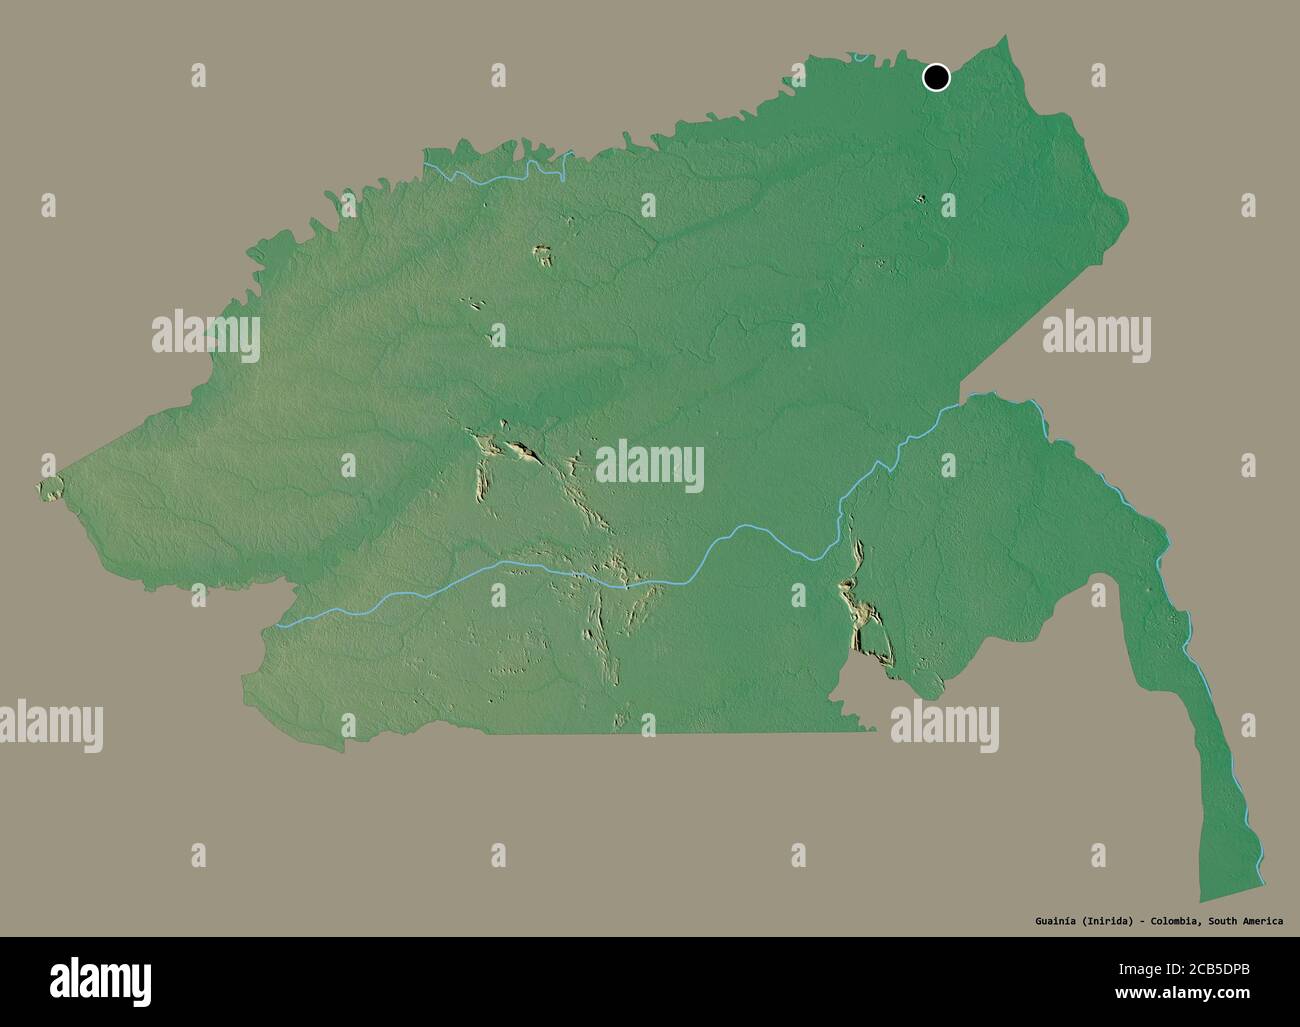 Forme de Guainía, commissiaire de Colombie, avec sa capitale isolée sur un fond de couleur unie. Carte topographique de relief. Rendu 3D Banque D'Images